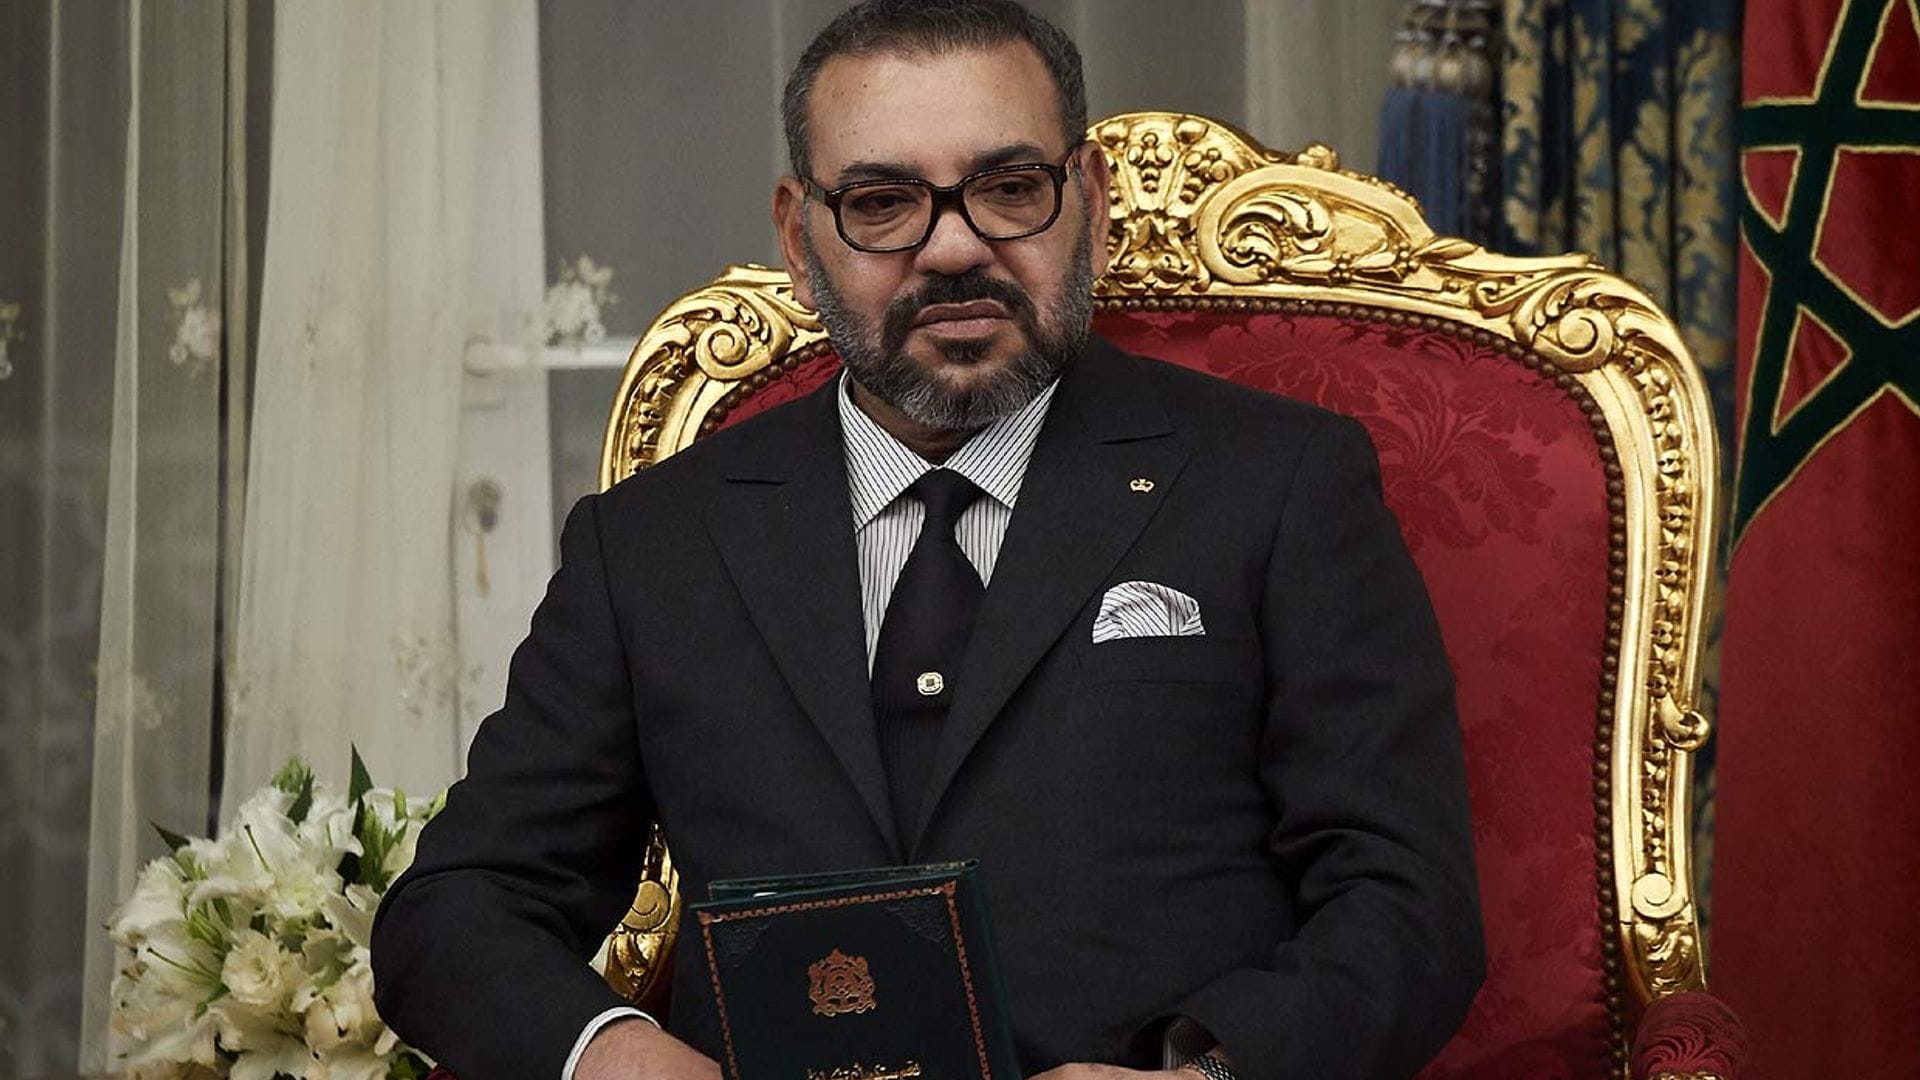 Mohamed VI, víctima de un robo millonario en Palacio por el que han detenido a 25 personas